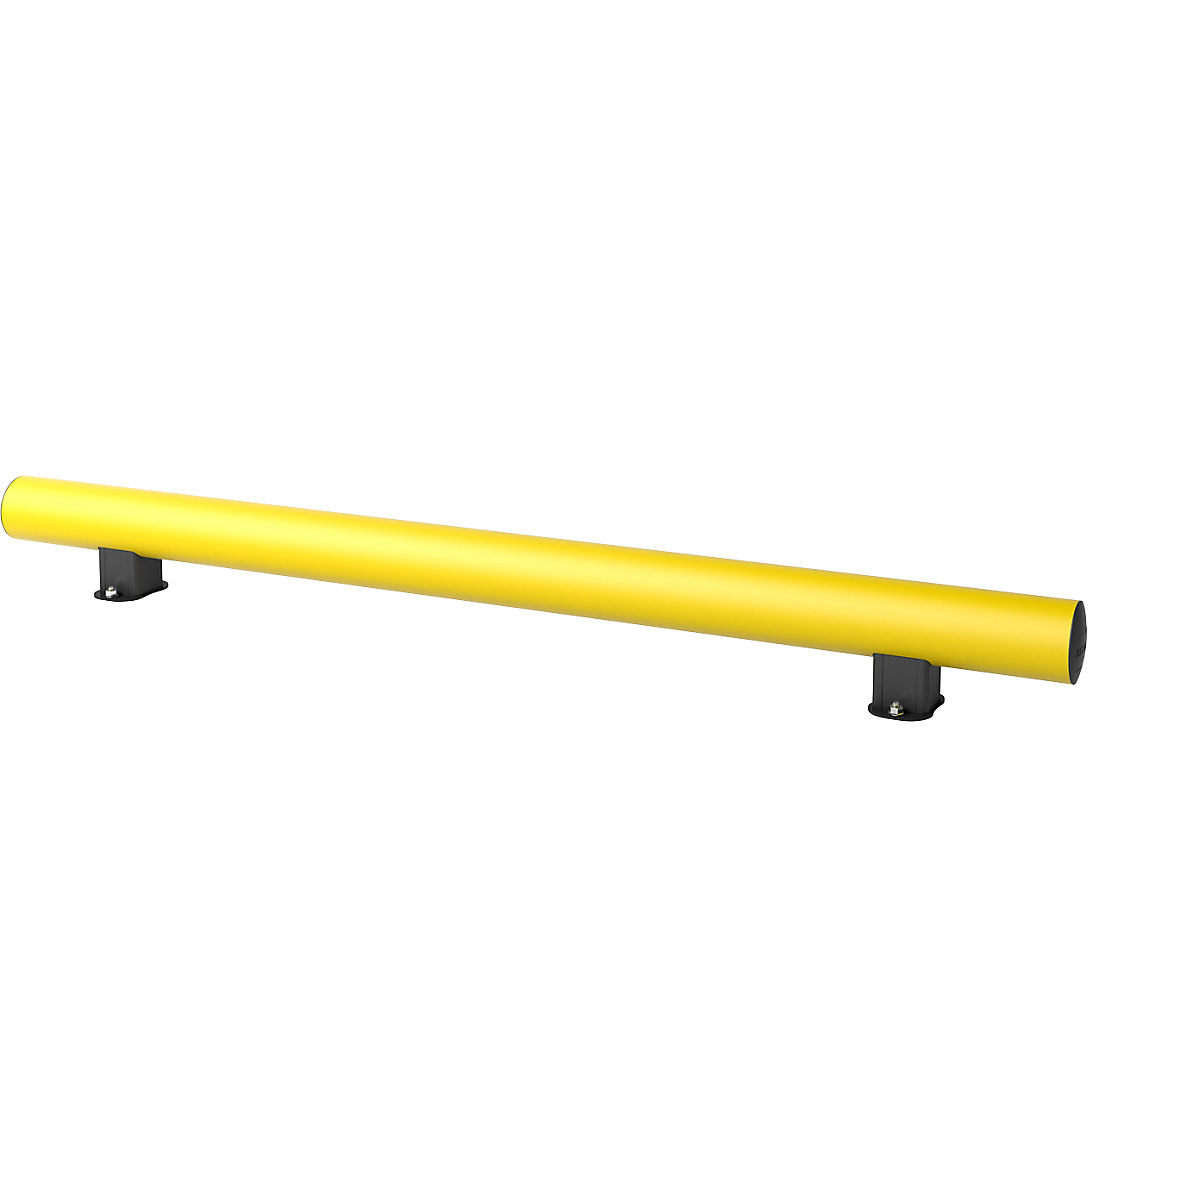 Rammschutz-Planke MINI, Höhe 198 mm, gelb, Länge 1800 mm, Kunststoff, zum Aufdübeln